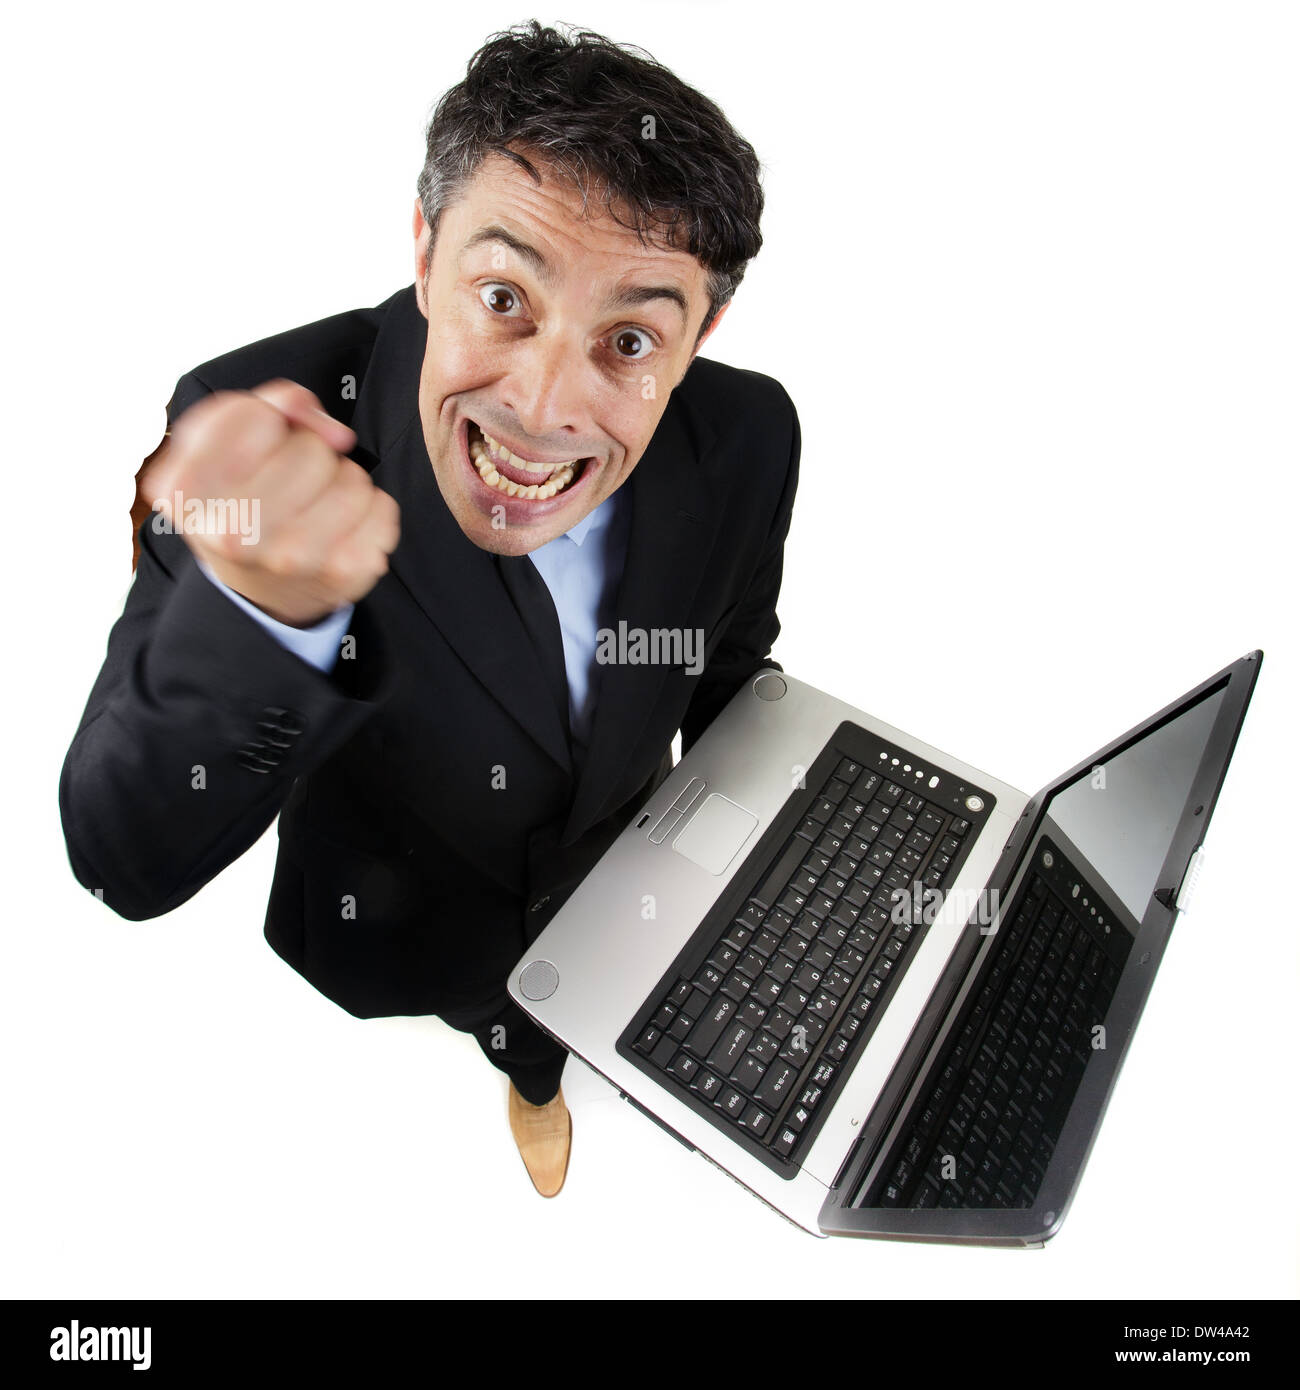 hohen Winkel in voller Länge Portrait von wütenden Geschäftsmann nach oben auf die Kamera schütteln seine Faust halten Sie einen offene laptop Stockfoto